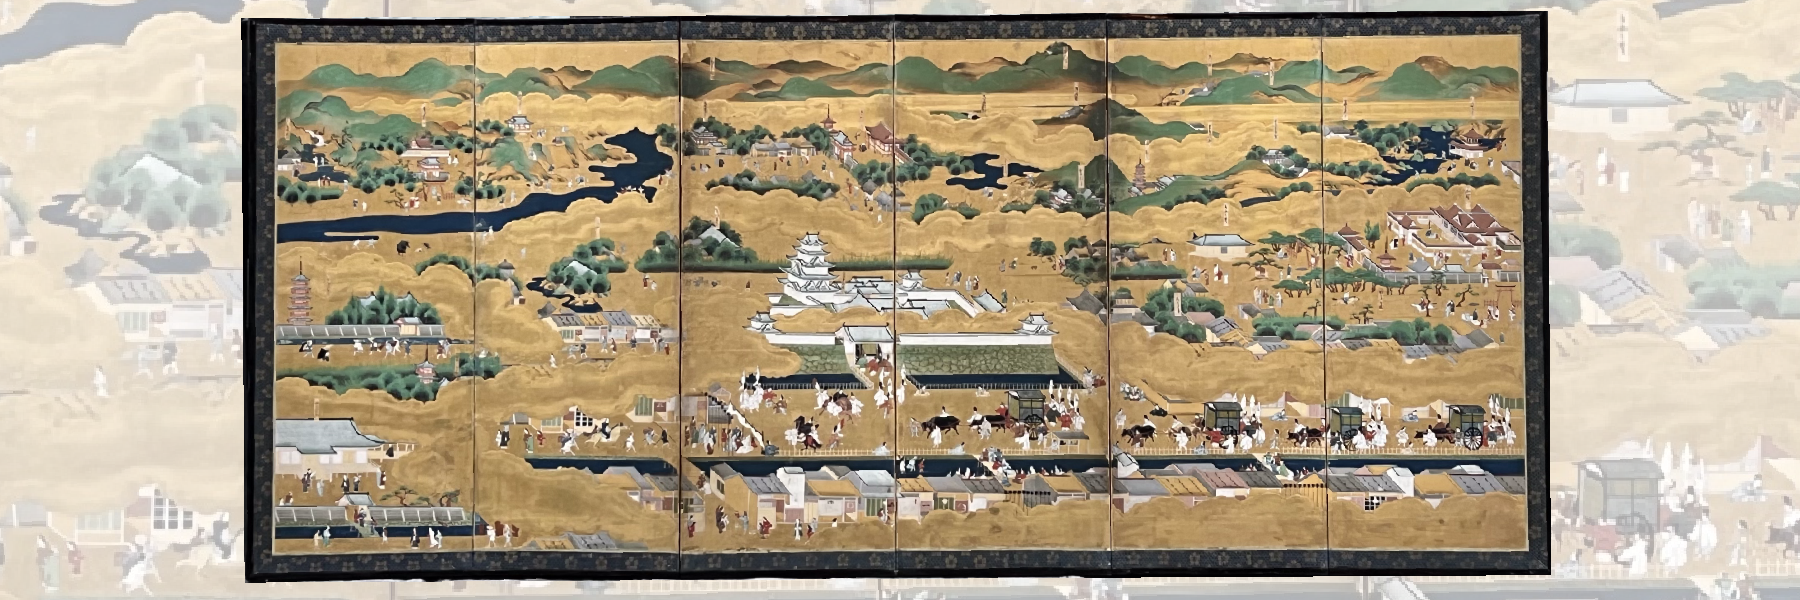 Vendu Paravent Rakuchu-Rakugai, Japon poque Edo 18e sicle